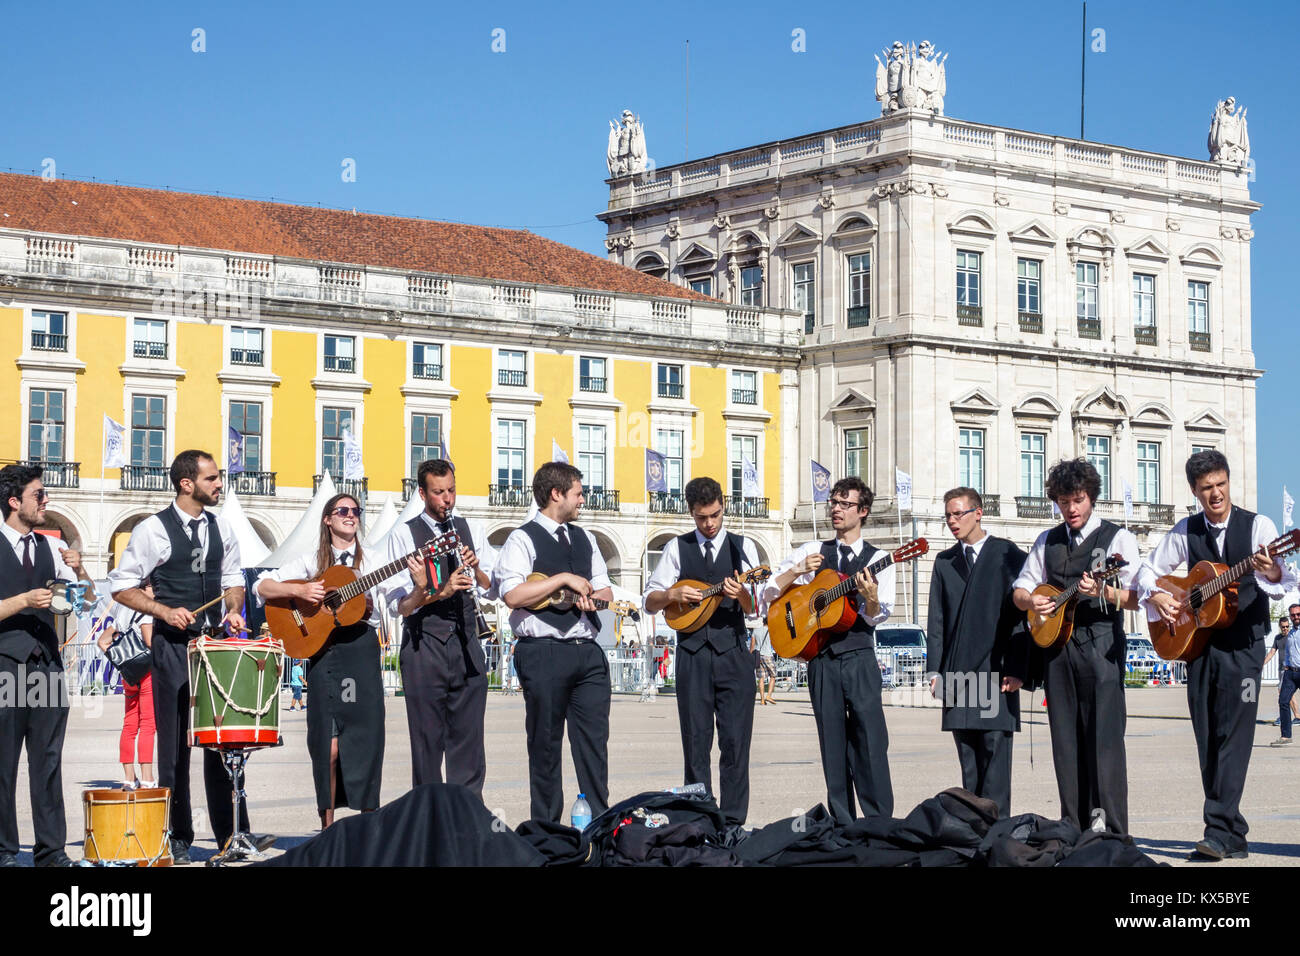 Lissabon Portugal, Baixa, Chiado, historisches Zentrum, Terreiro do Paco, Praca do Comercio, Handelsplatz, öffentlicher platz, Tuna, traditionelle Musikgruppe, Studentenstudent Stockfoto